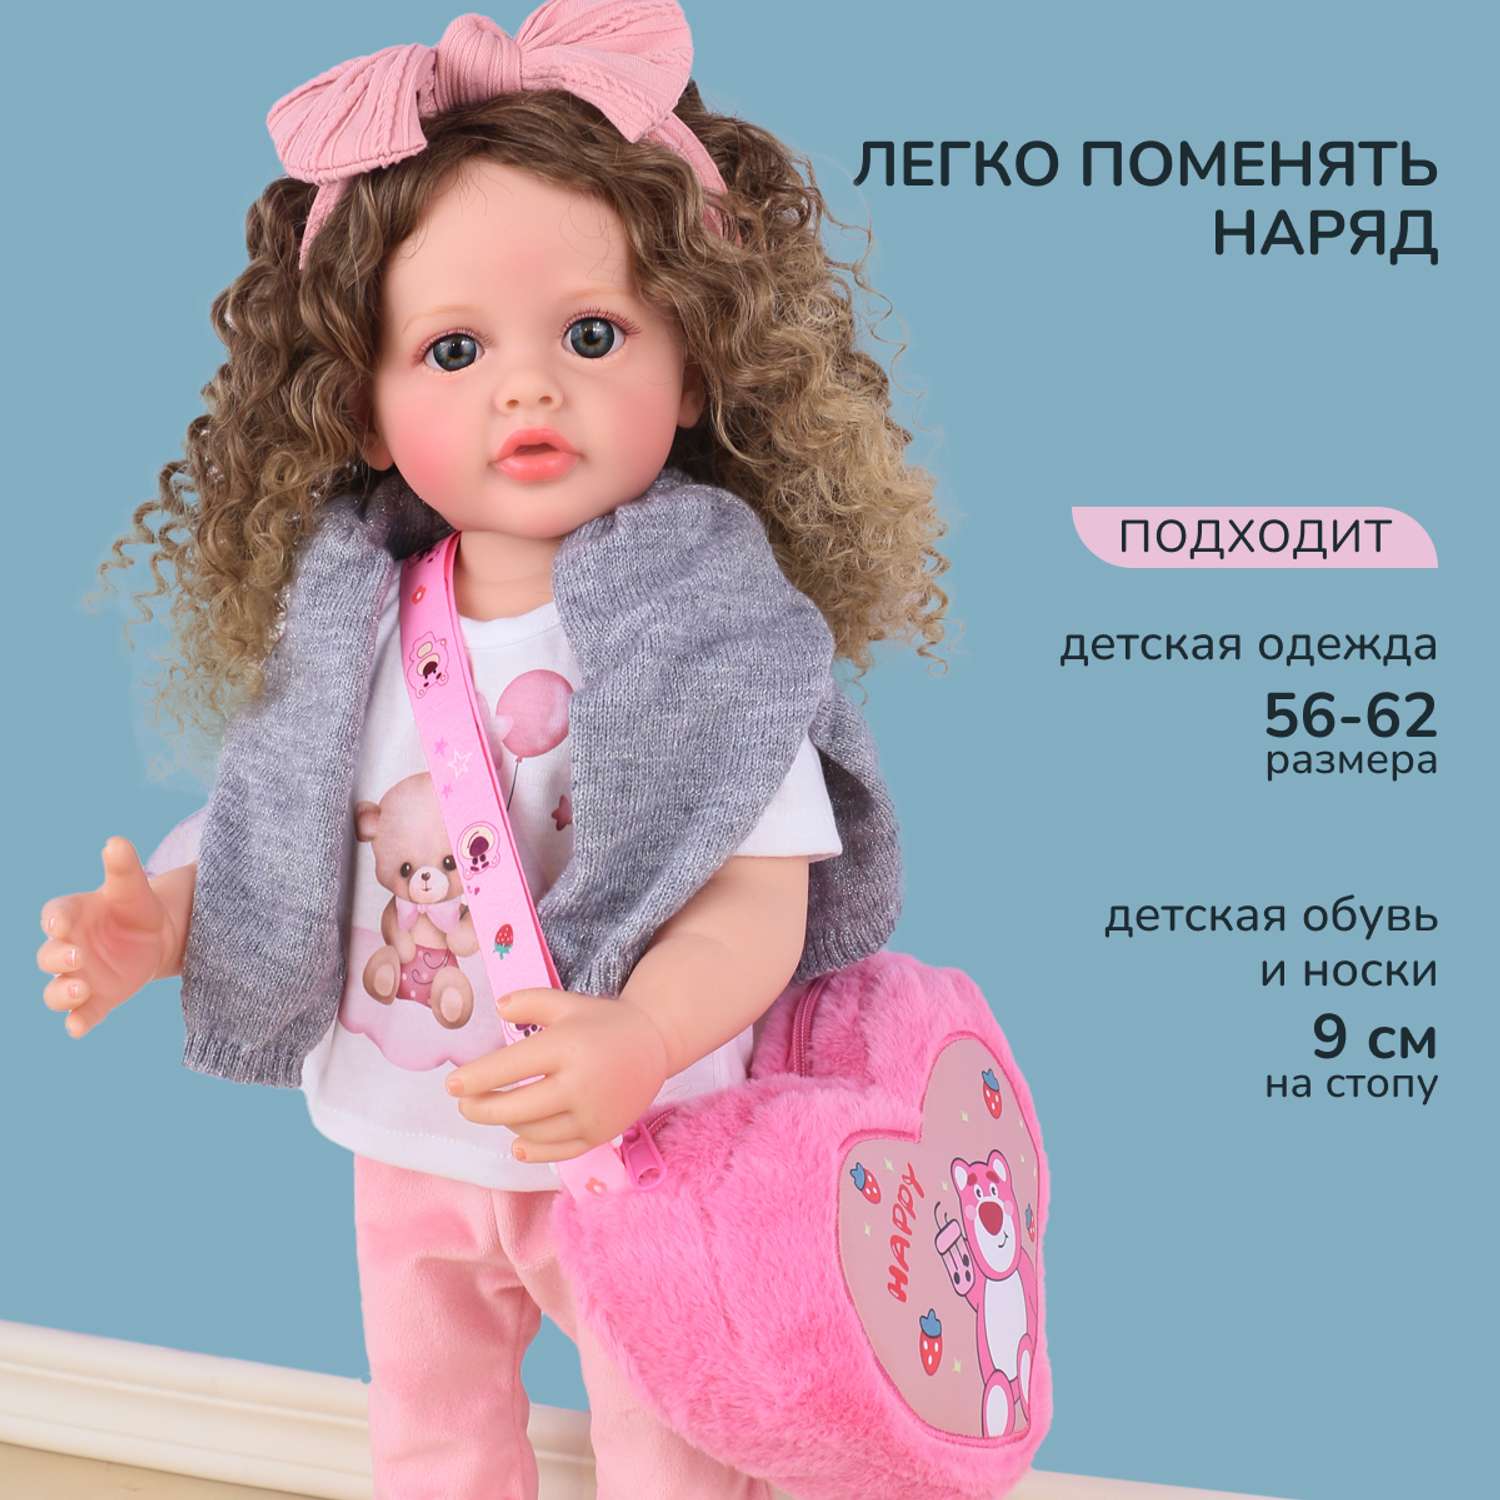 Кукла Реборн QA BABY Маргарита большая пупс набор игрушки для девочки 55 см 5552 - фото 3